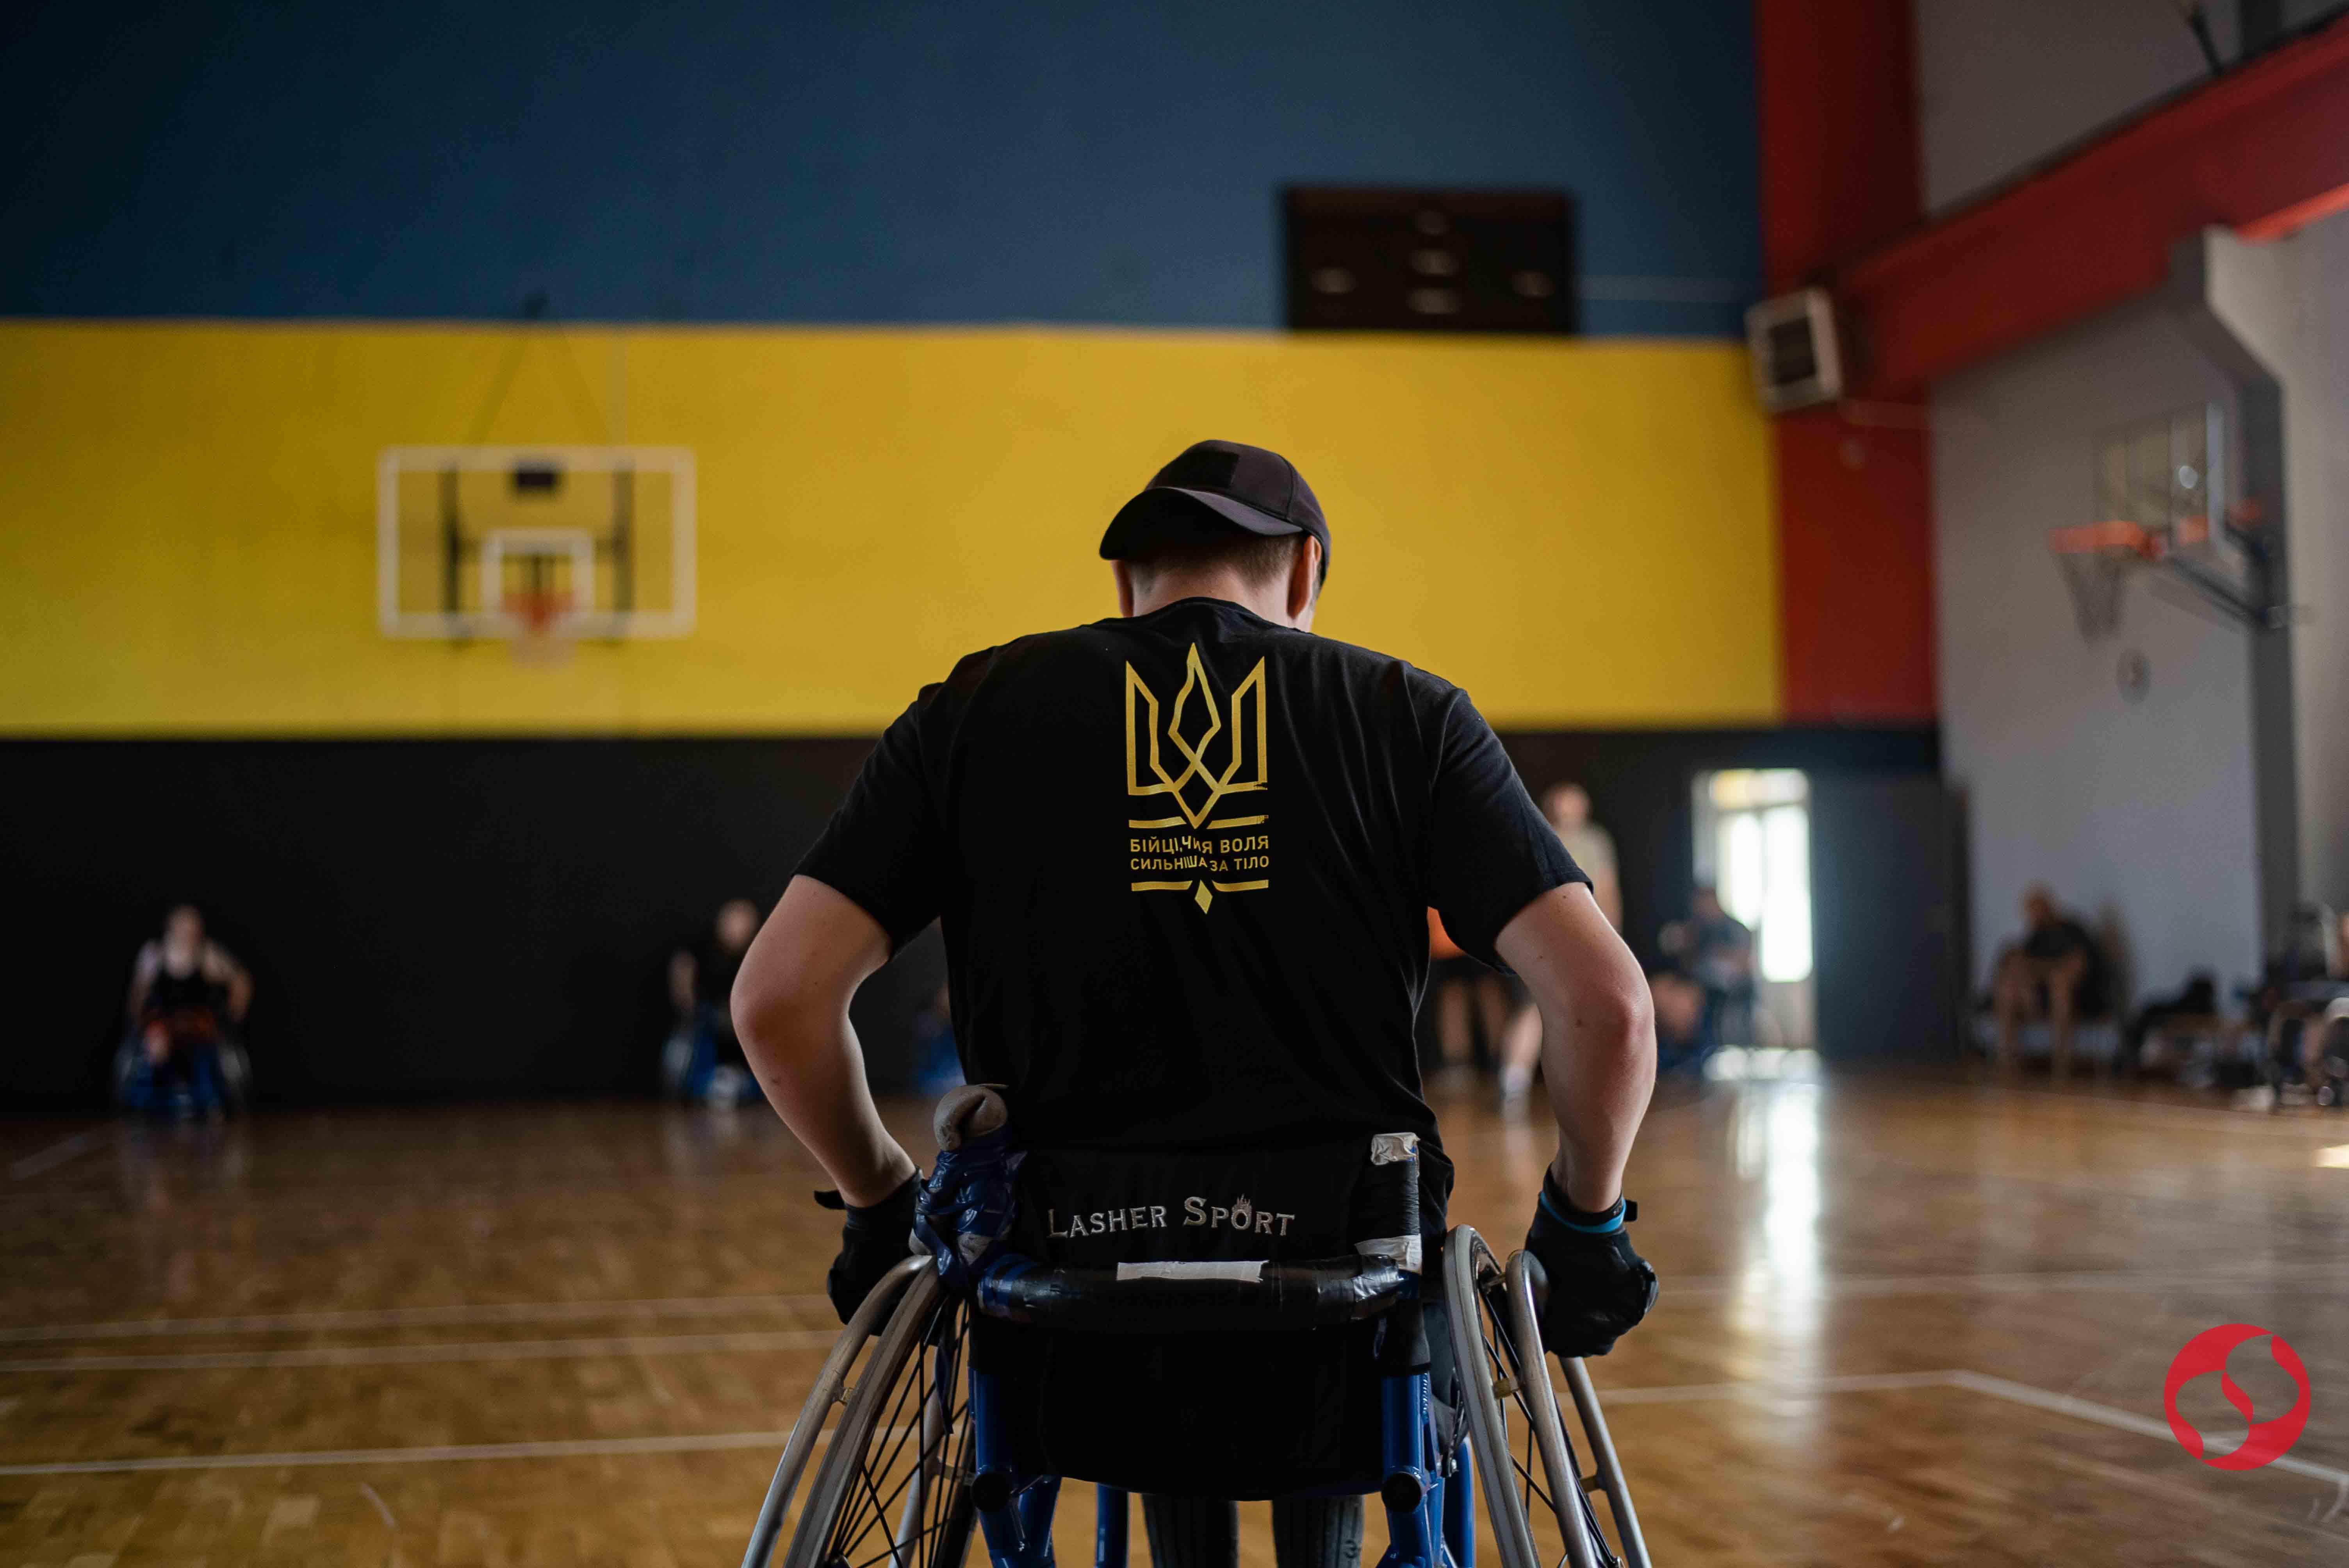 "У мене є лише спорт". Як українські військові та ветерани готуються до Ігор нескорених